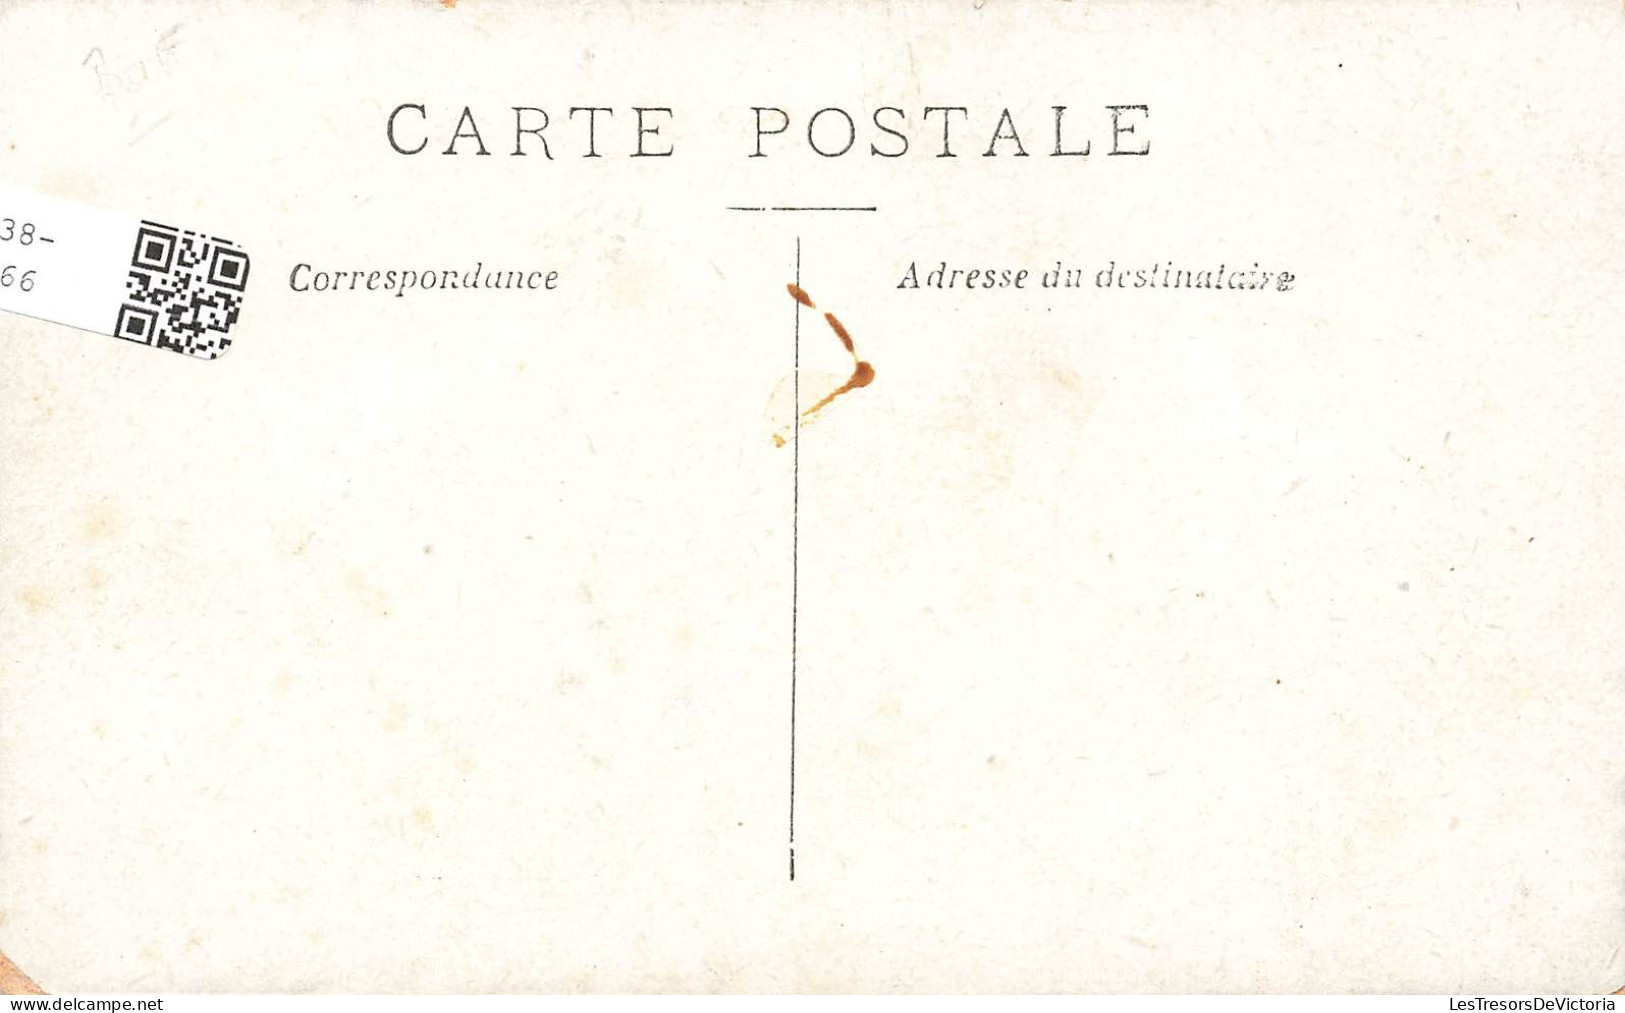 FRANCE - Les Berges De La Seine - Quai De La Tournelle Et Notre Dame - Charrette - Carte Postale Ancienne - Autres & Non Classés